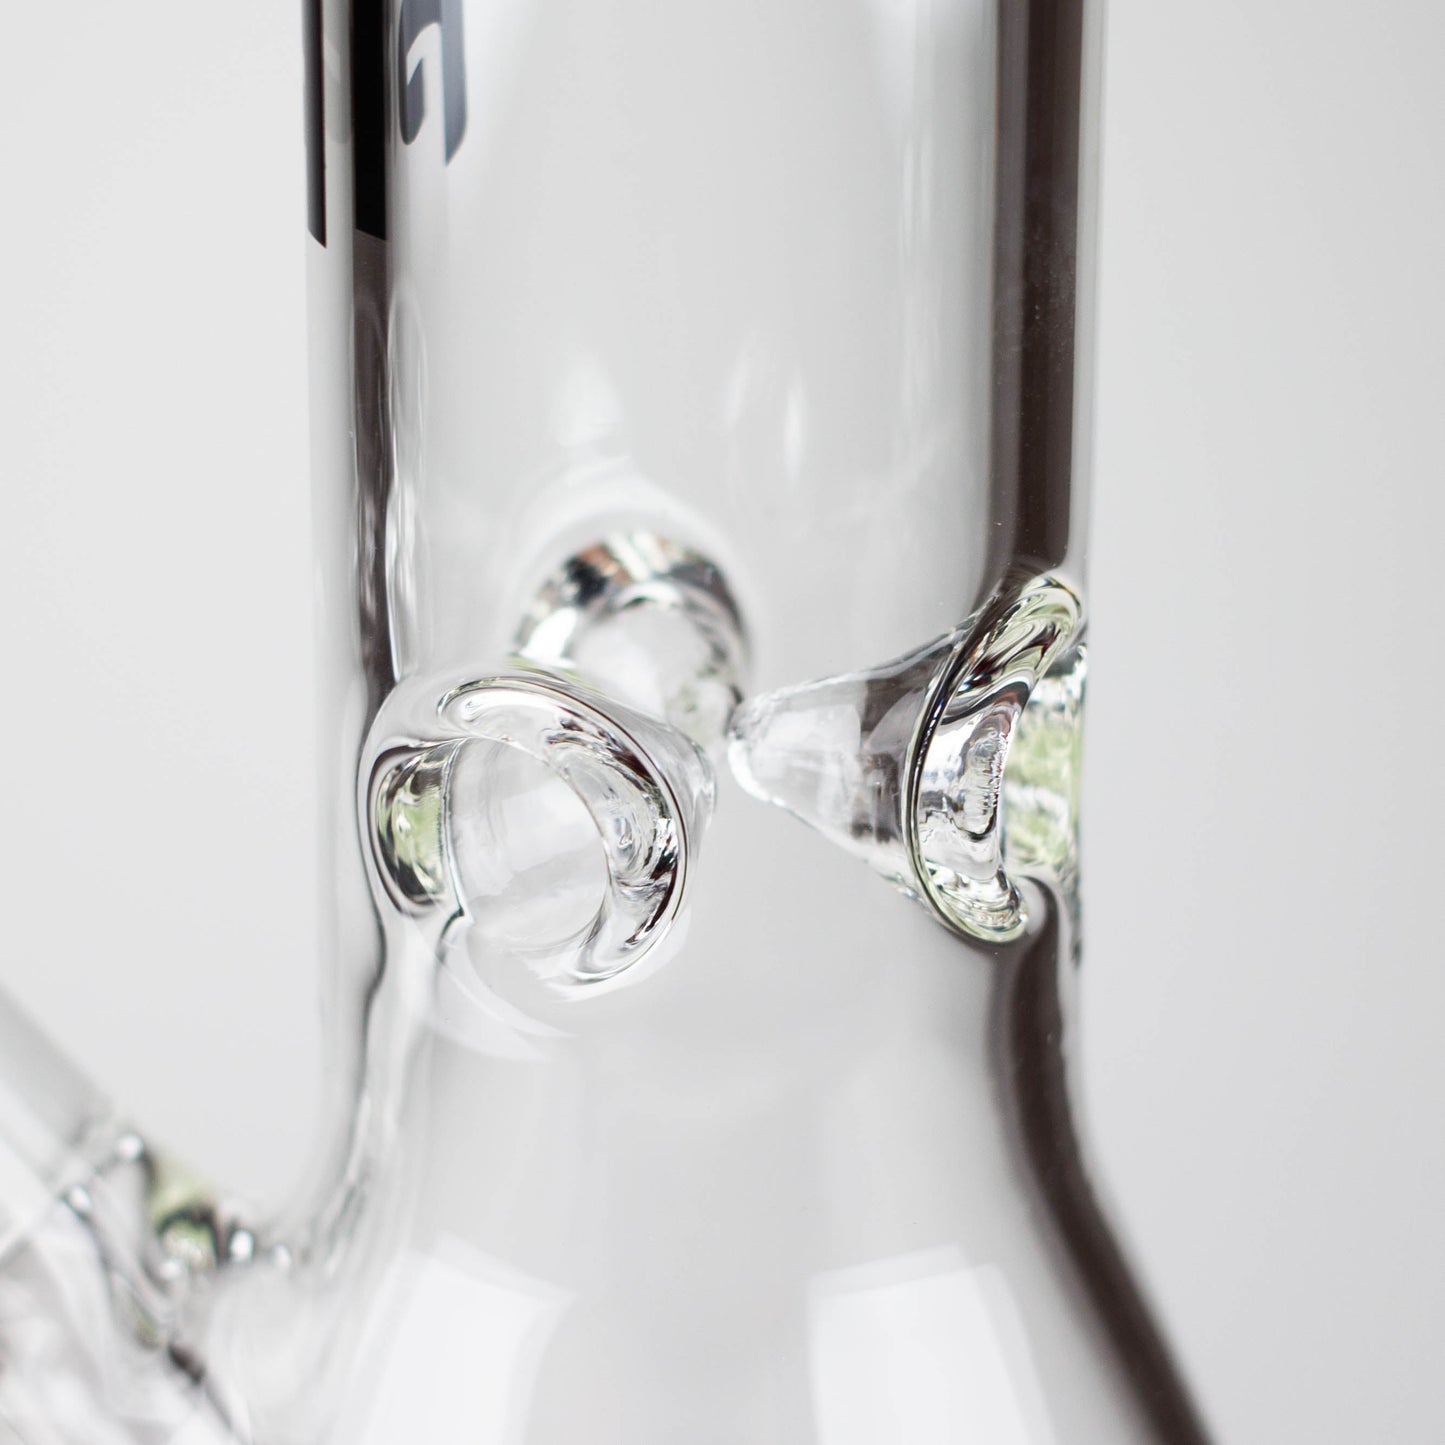 Fortune | 12" 5mm Beaker Glass Bong [125005]_13